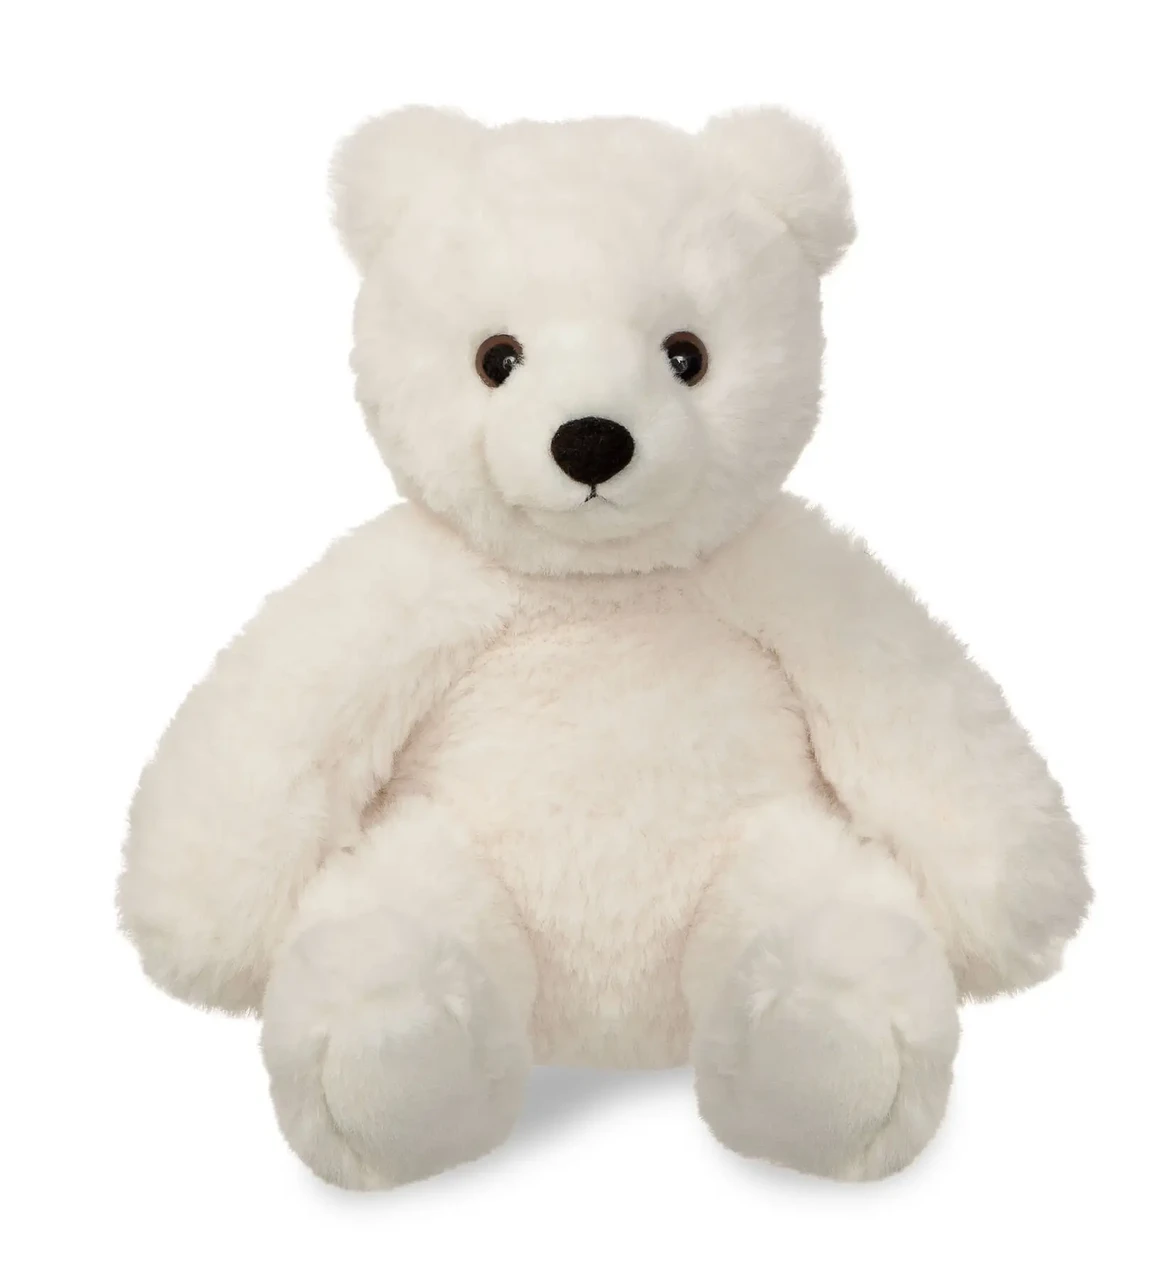 М'яка іграшка Aurora Ведмідь білий 28 см (180161A)